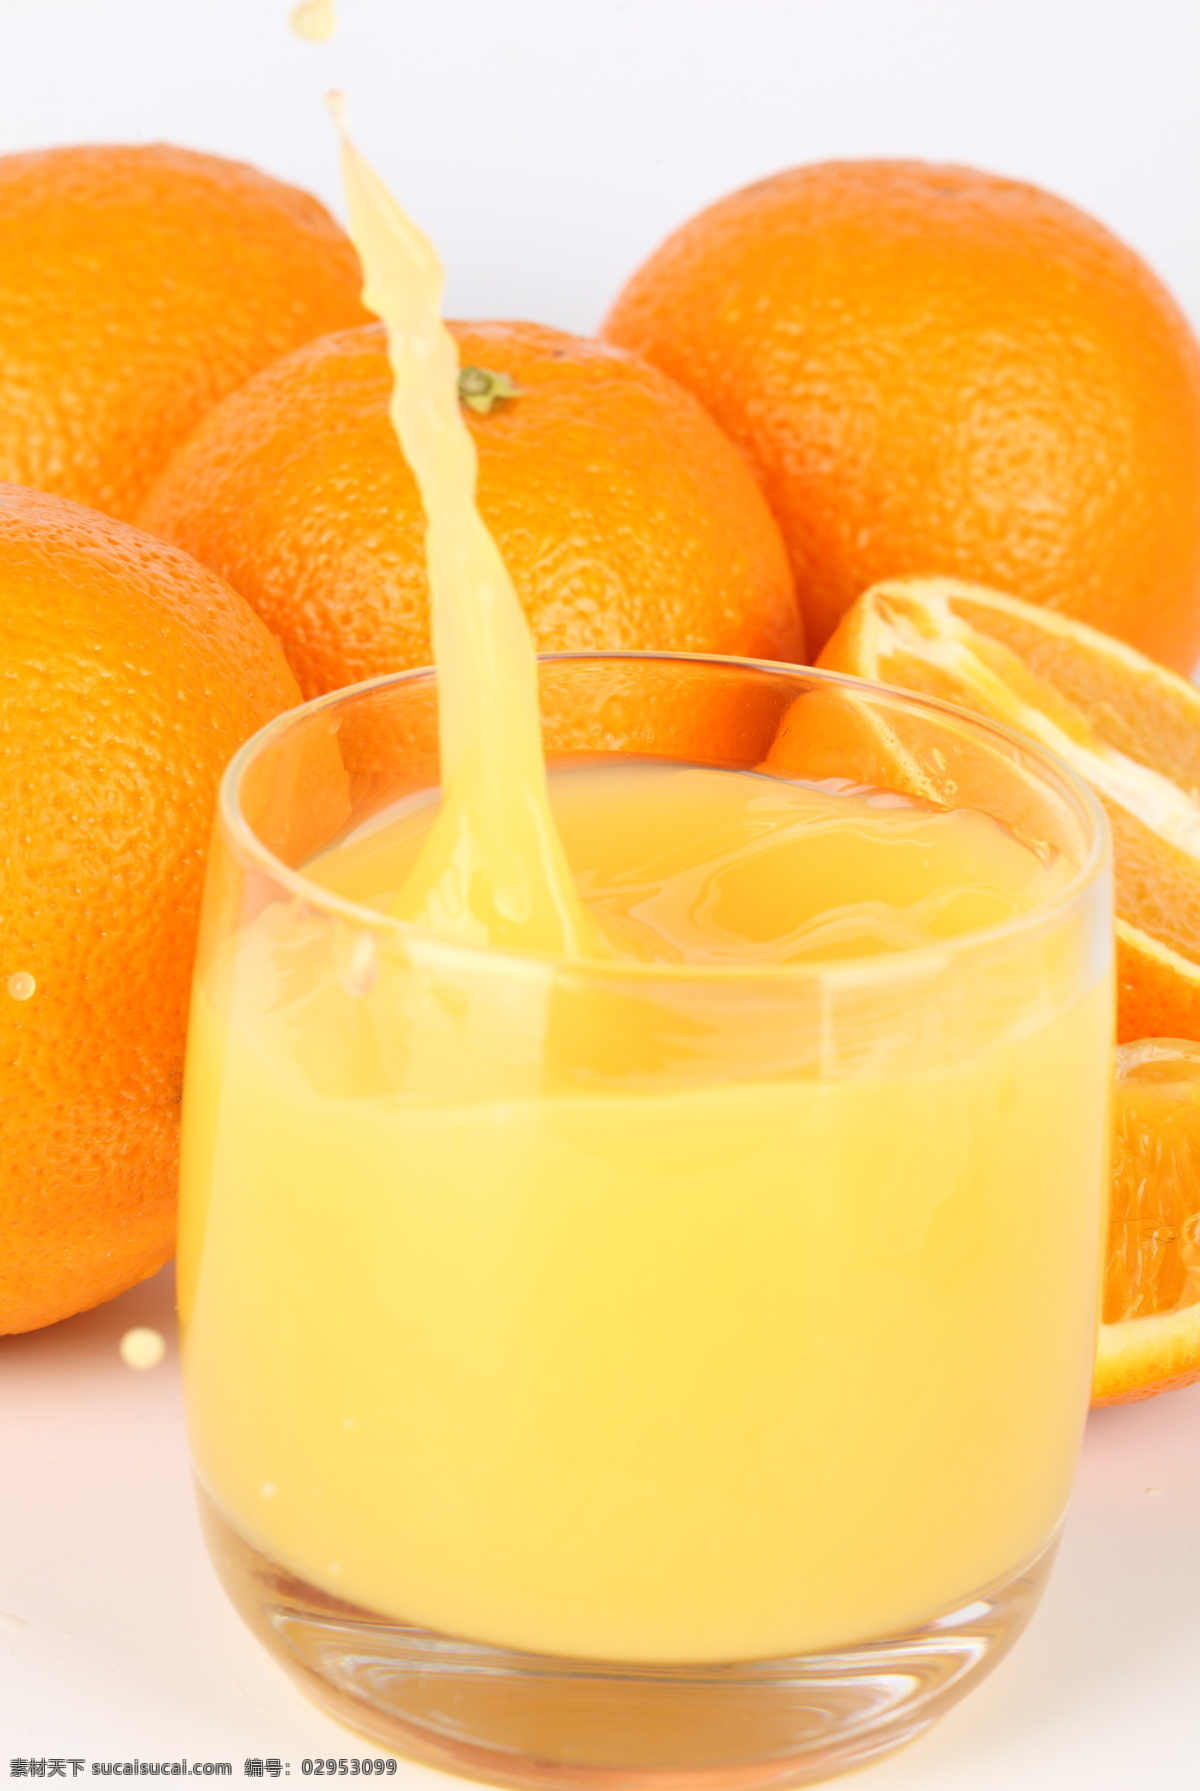 餐饮美食 橙汁 果汁 酒 水果 鲜橙 鲜橙多 饮料 健康水果 健康饮料 饮料酒水 psd源文件 餐饮素材